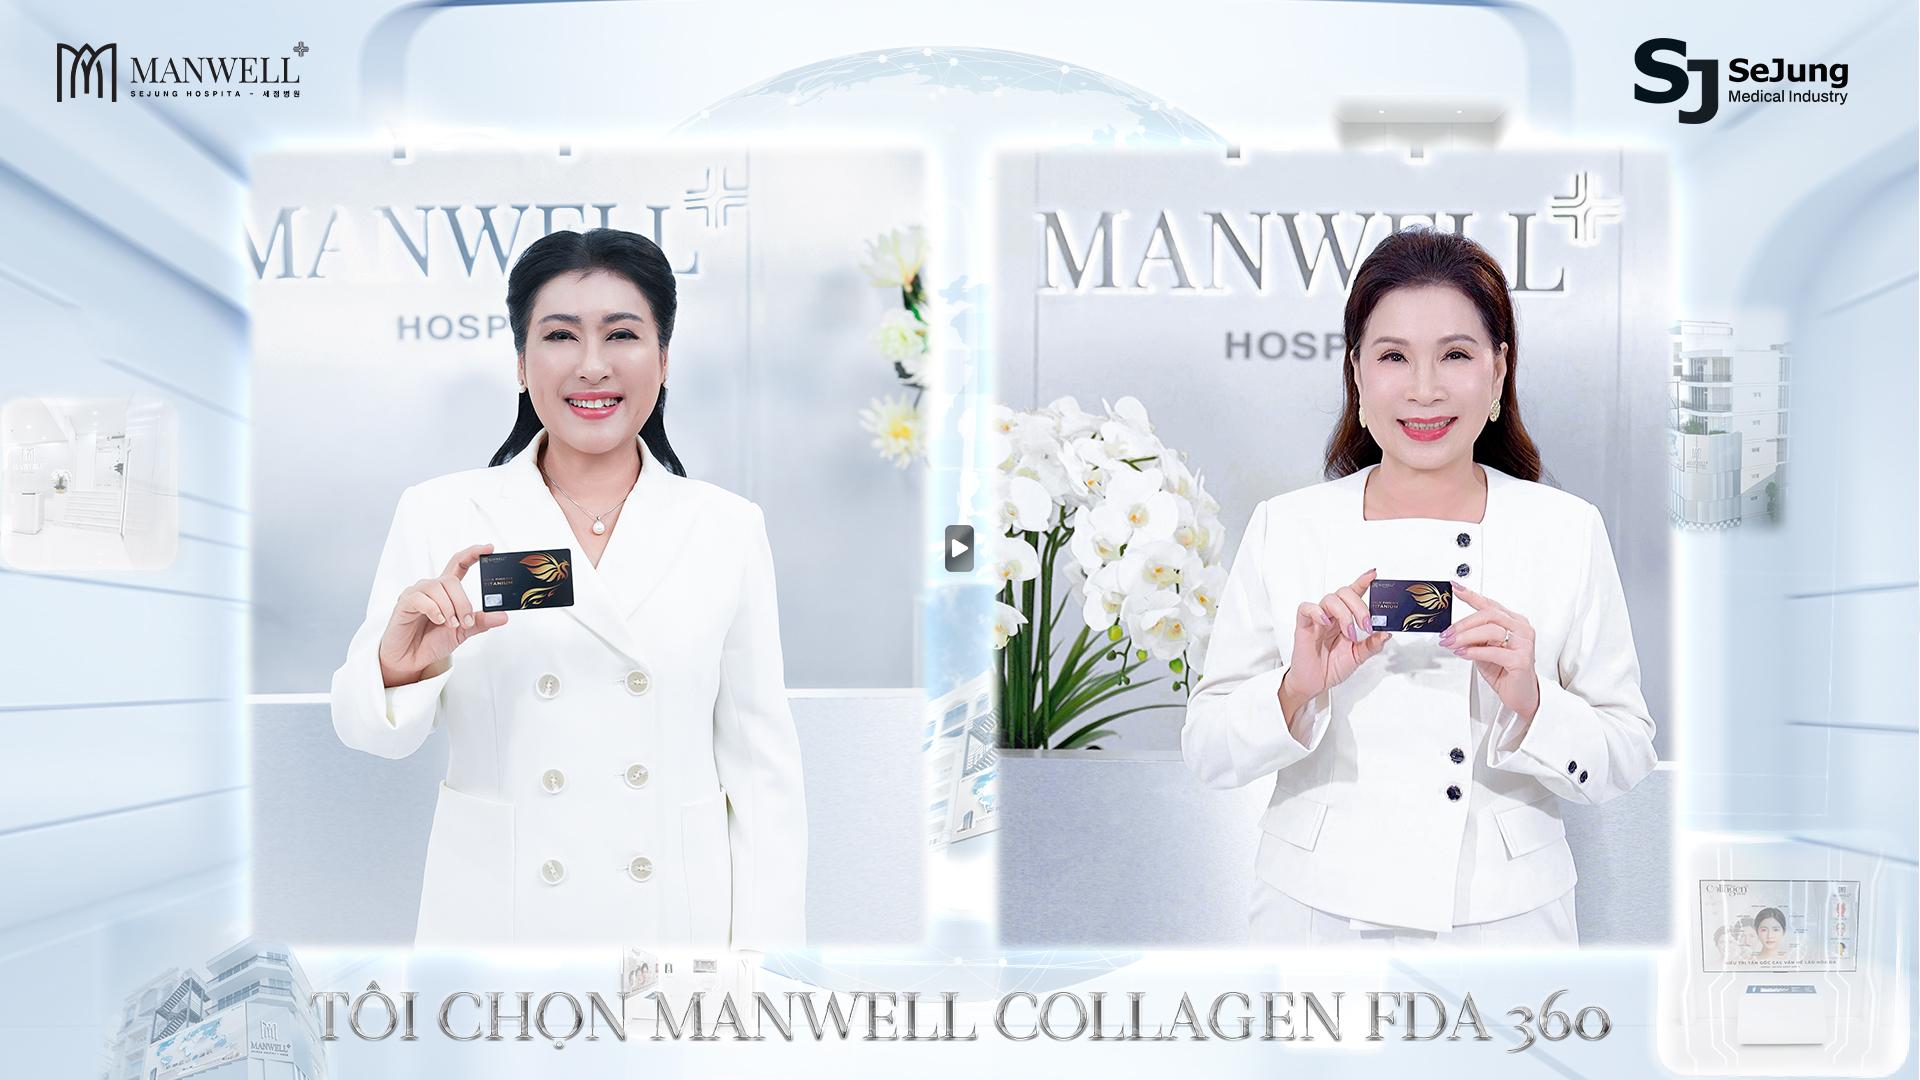 Đẳng cấp thẩm mỹ 5 sao Hàn Quốc - Viện trẻ hóa Manwell định vị thương hiệu làm đẹp và trẻ hóa tại Việt Nam - ảnh 6